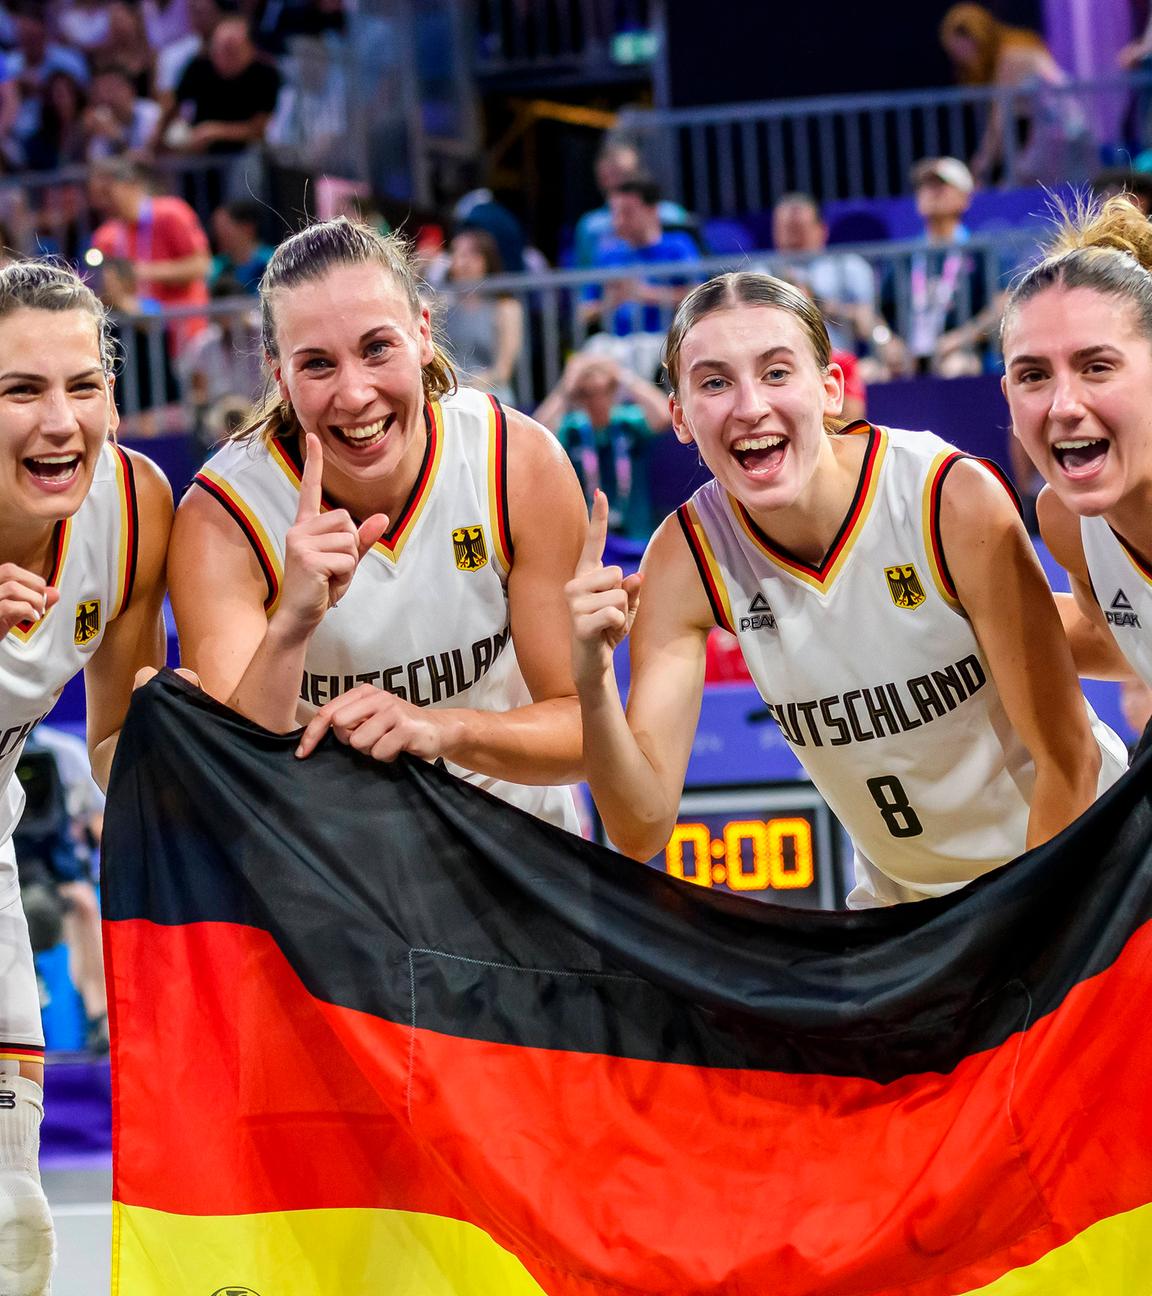 Die deutschen Frauen gewinnen das Finale gegen Spanien beim 3x3 Basketball.